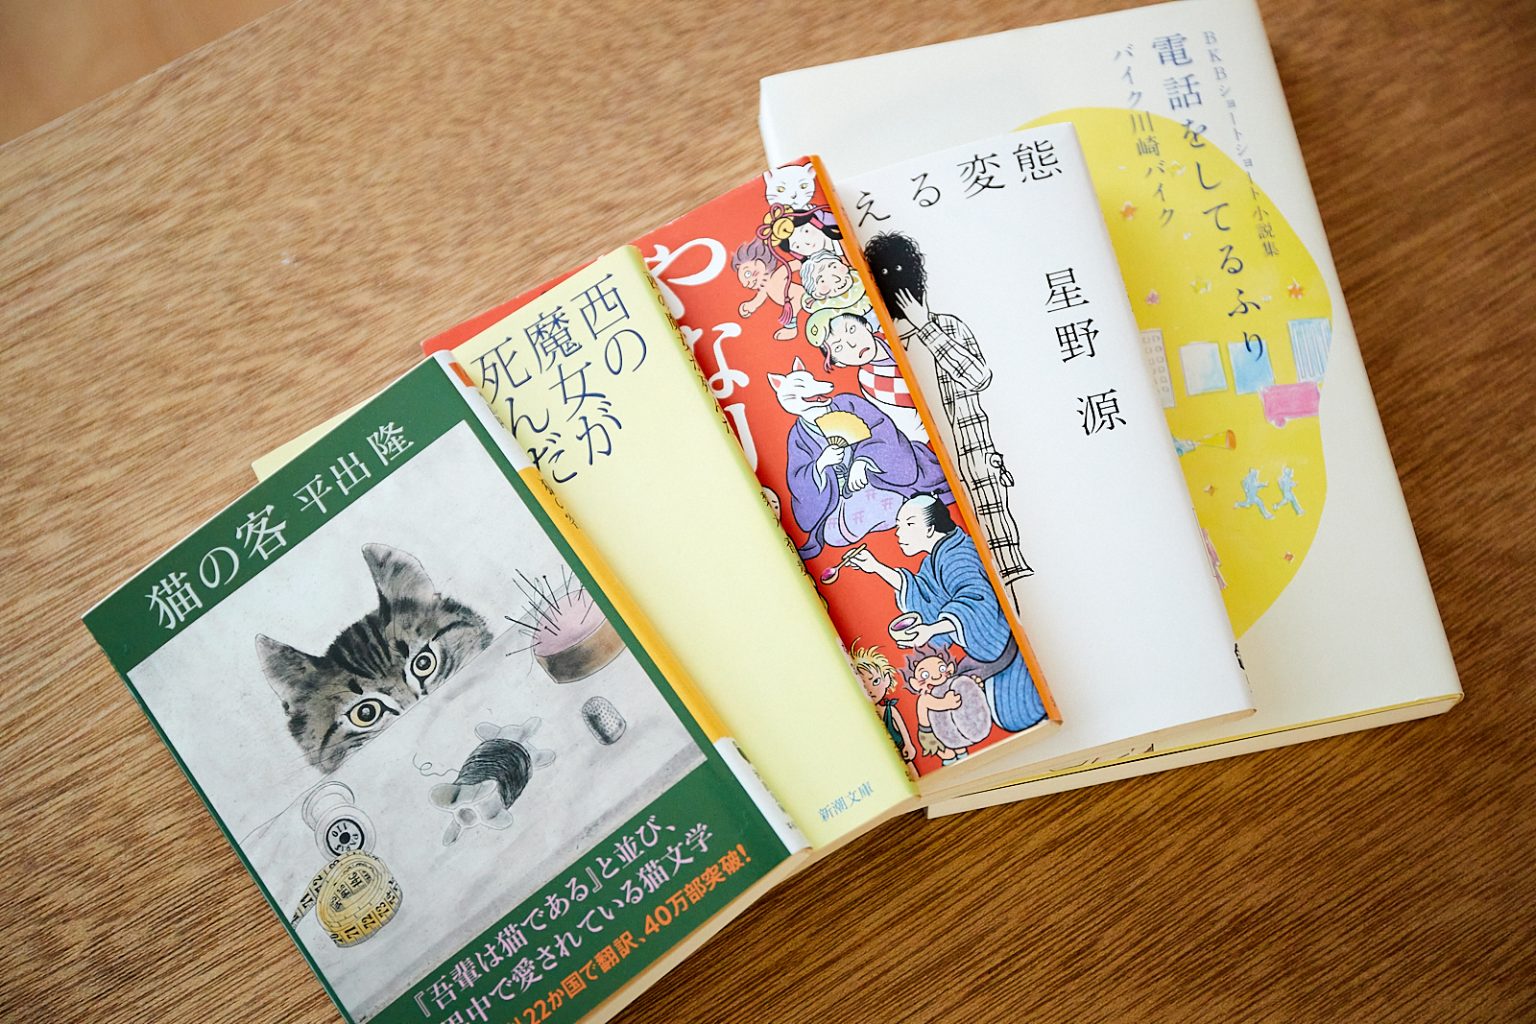 左から『猫の客』（平出隆・著）、『西の魔女が死んだ』（梨木香歩・著）、『やなりいなり』（畠中恵・著）、『よみがえる変態』（星野源・著）、『BKBショートショート小説集 電話をしてるふり』（バイク川崎バイク・著）。